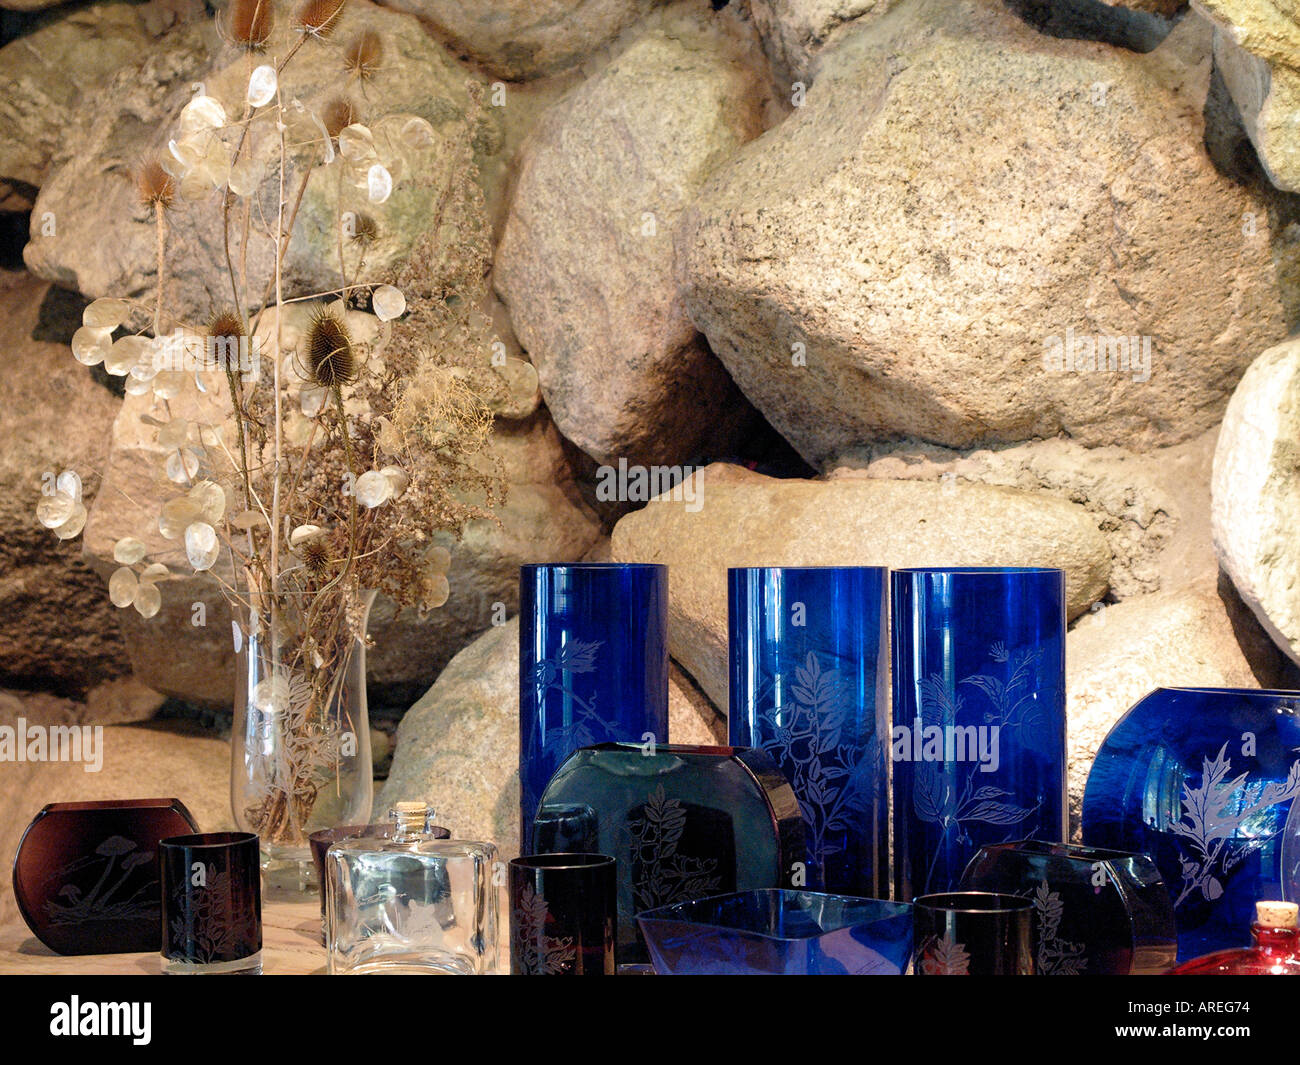 Disposición de vidrio para la venta en una tienda de arte paredes de piedra proporcionan el fondo Foto de stock